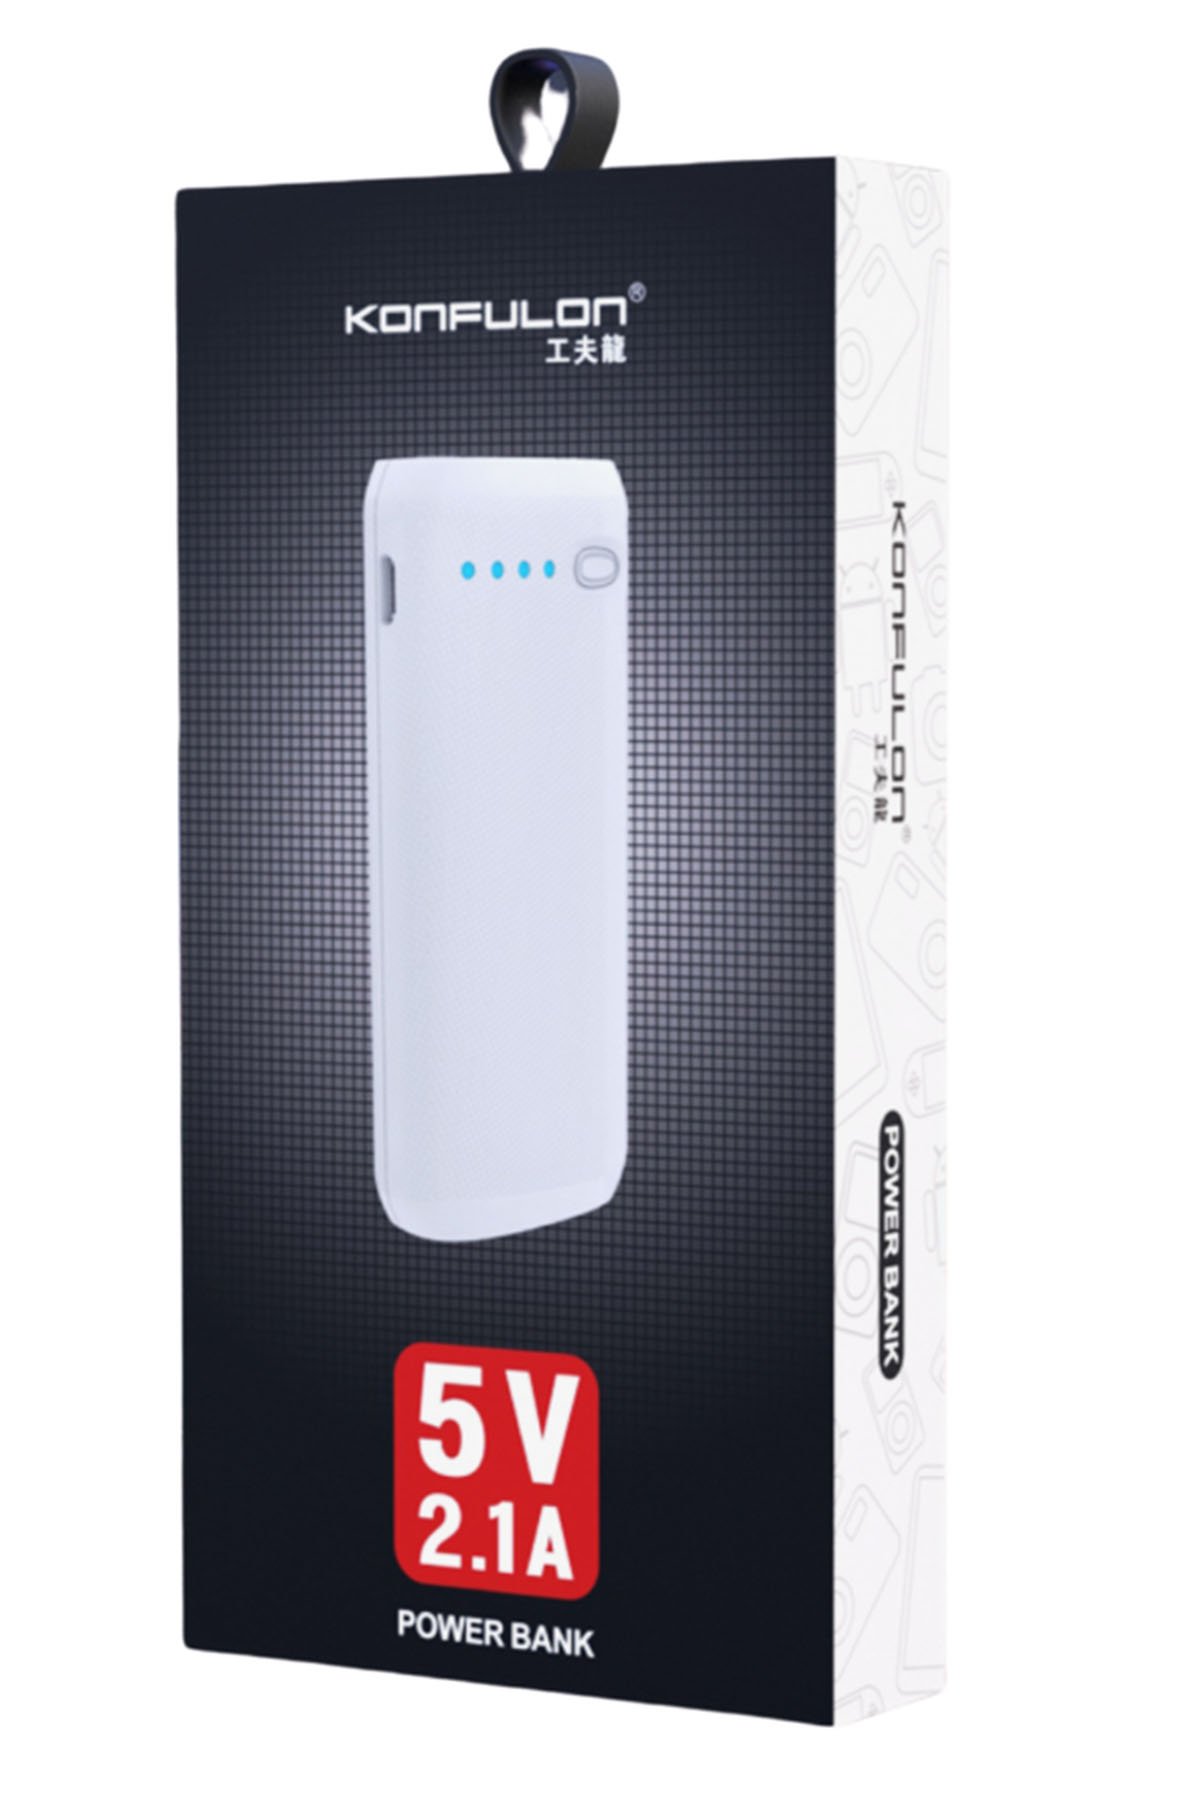 Konfulon DC01 Süper Hızlı Micro USB Kablo 1M 2.4A - Siyah